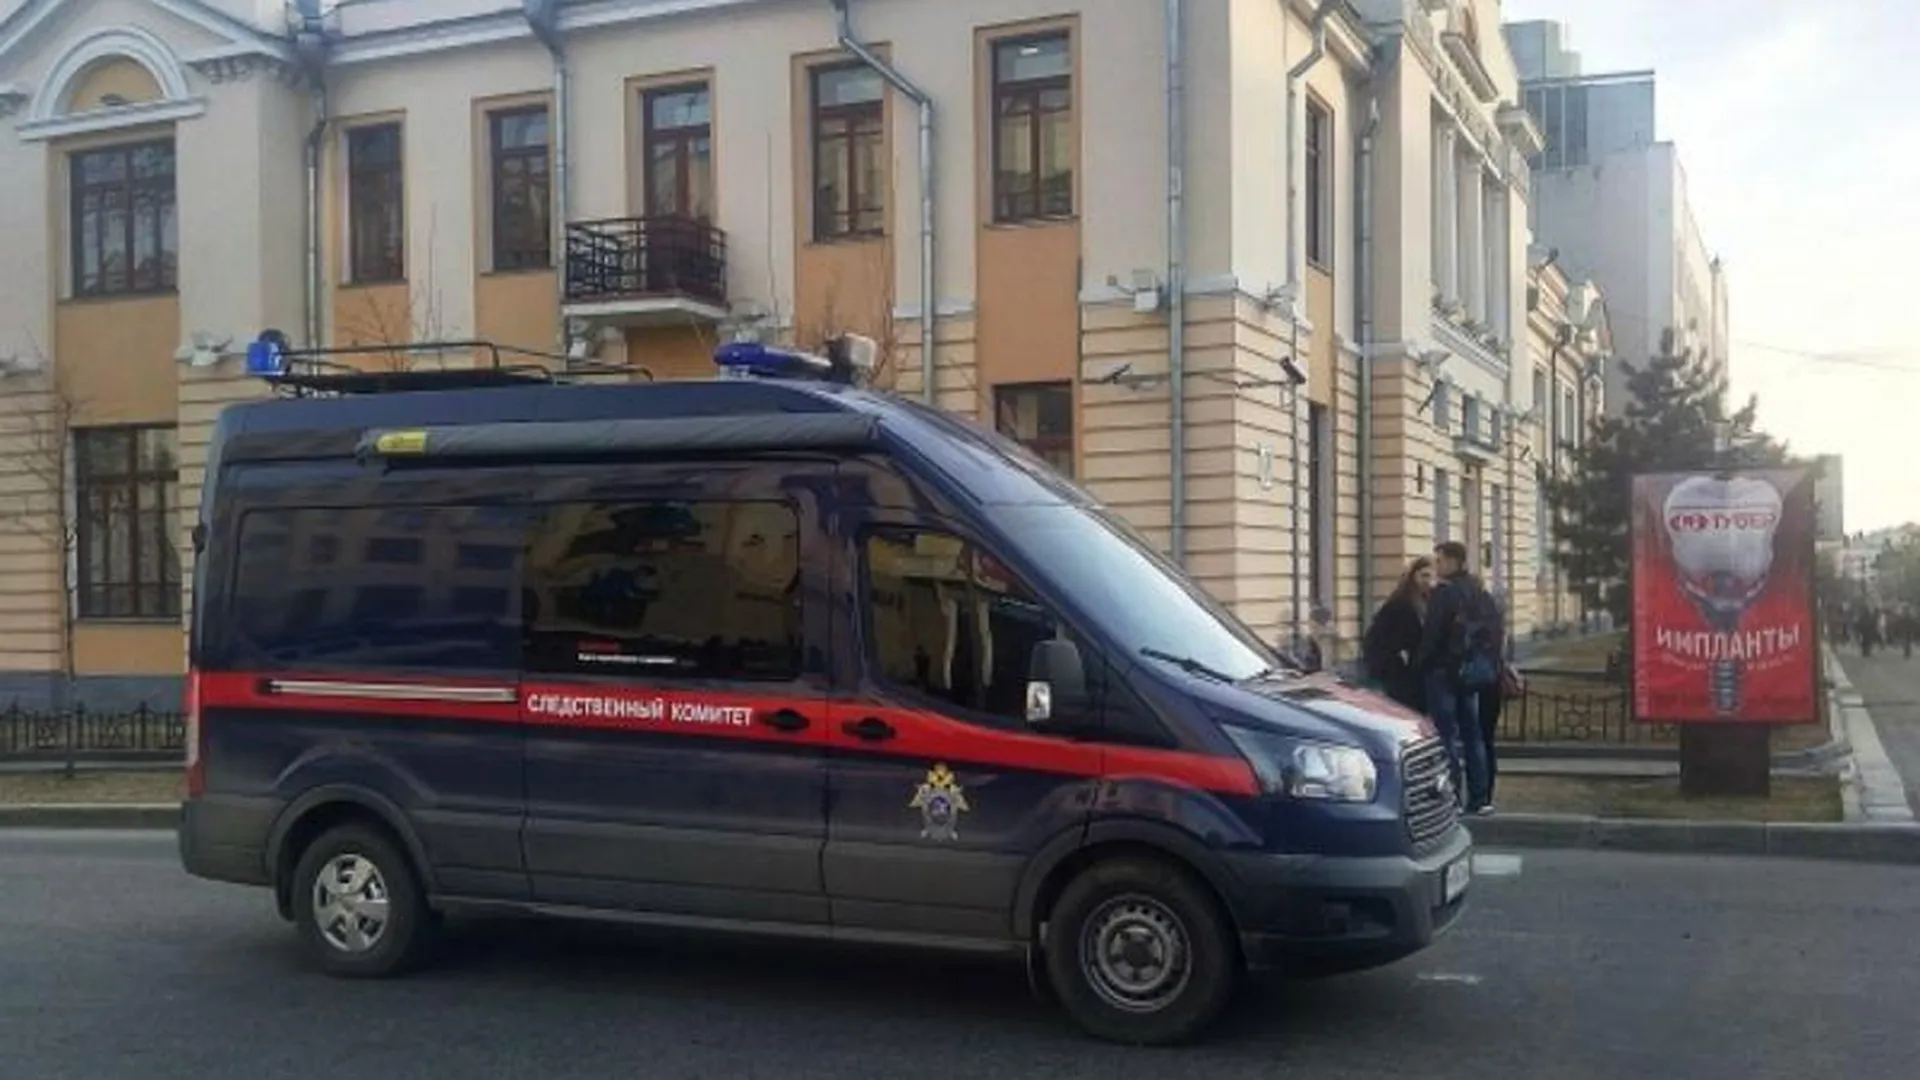 Обстоятельства гибели подростка устанавливает СК в Орехово-Зуевском районе